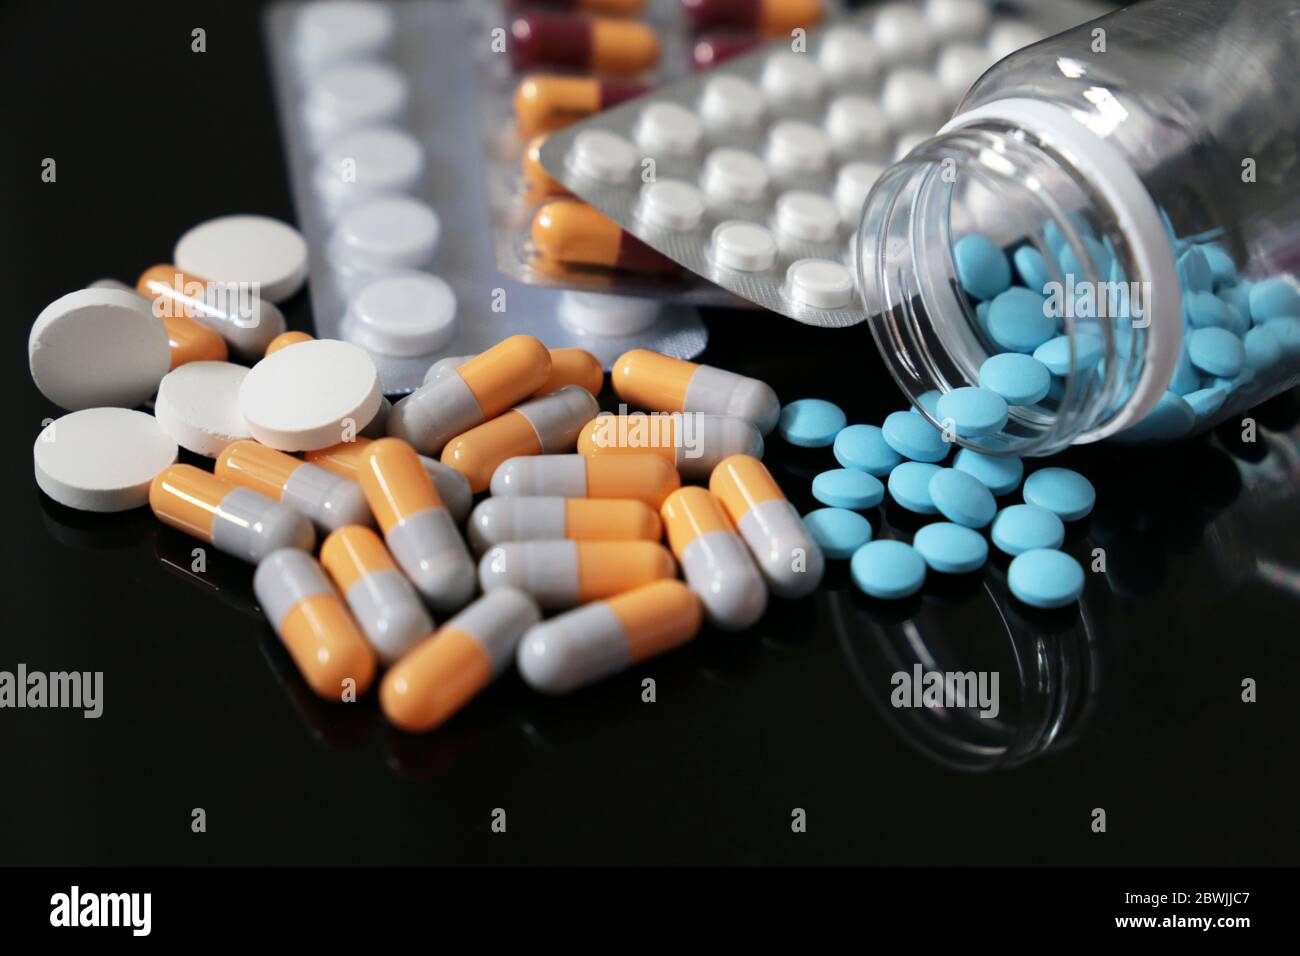 Pillen auf einem dunklen Glastisch, verschiedene Medikamente in Kapseln und Tabletten aus einer Flasche verstreut. Konzept der Apotheke, Antibiotika, Vitamine Stockfoto